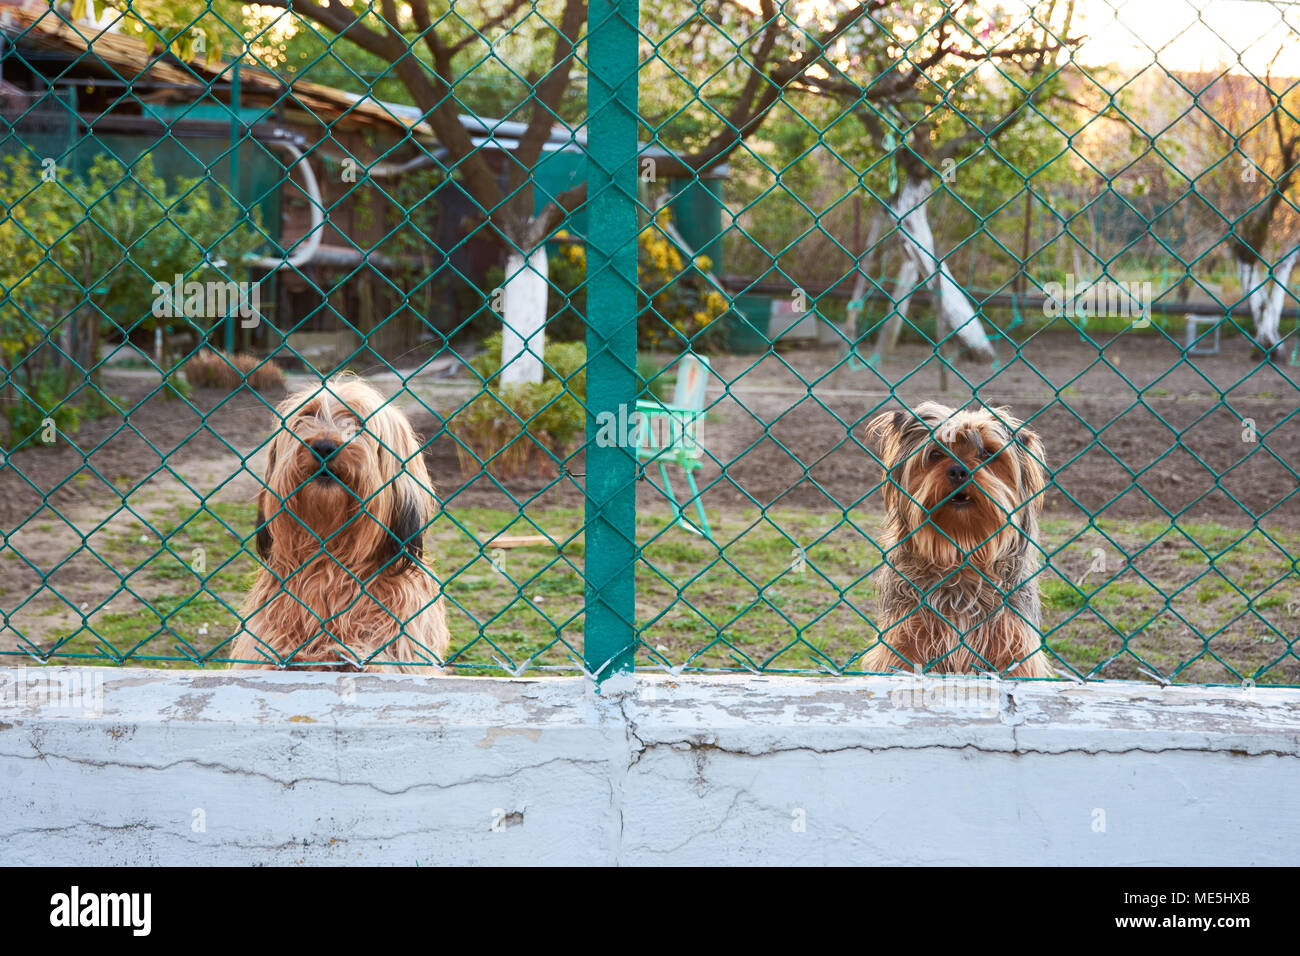 Bellende Hunde Stockfotos und -bilder Kaufen - Alamy